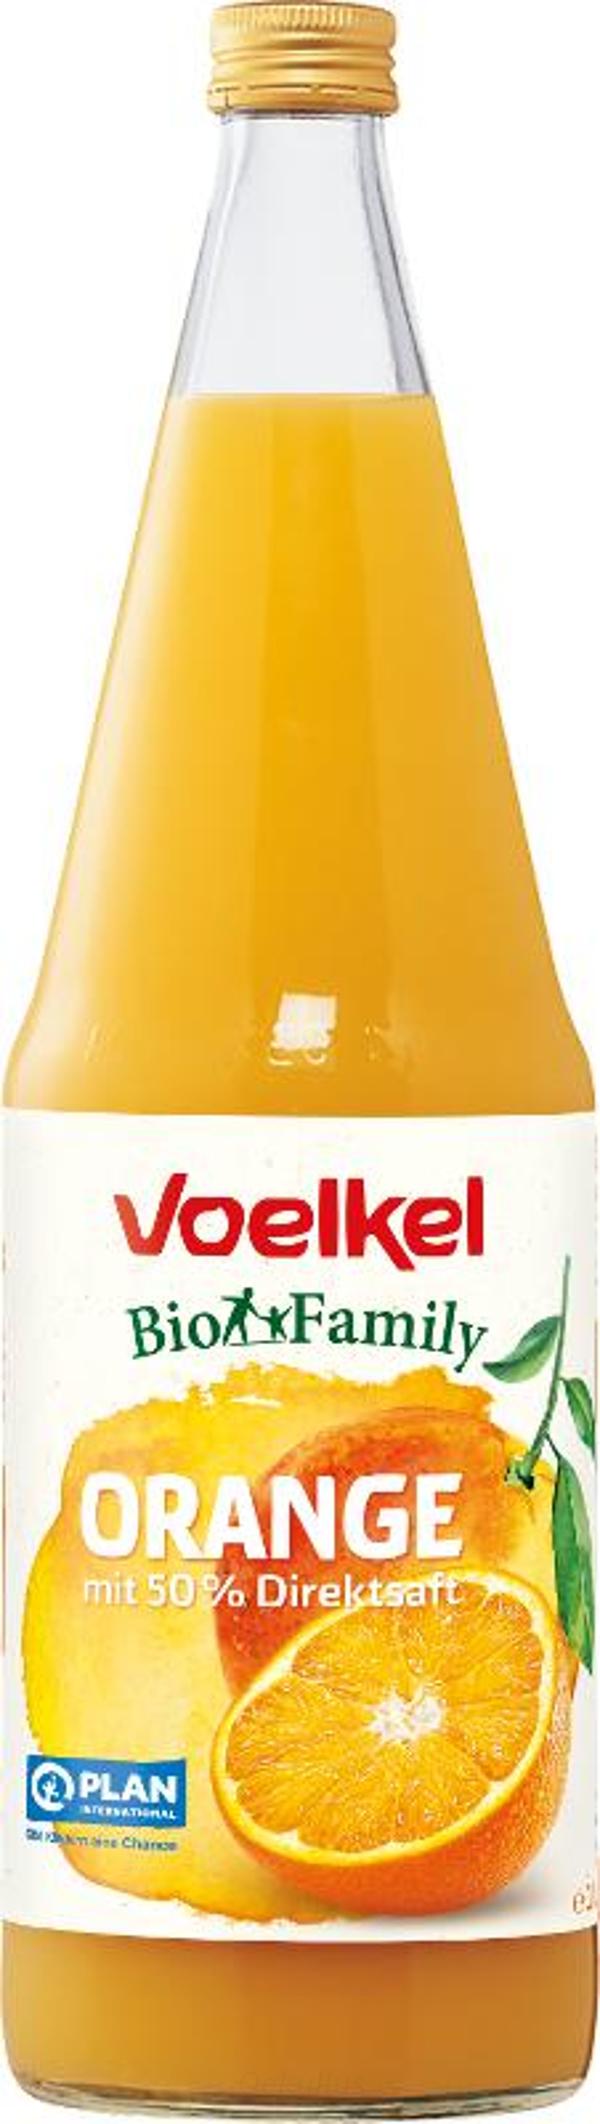 Produktfoto zu BioFamily Orange Flasche